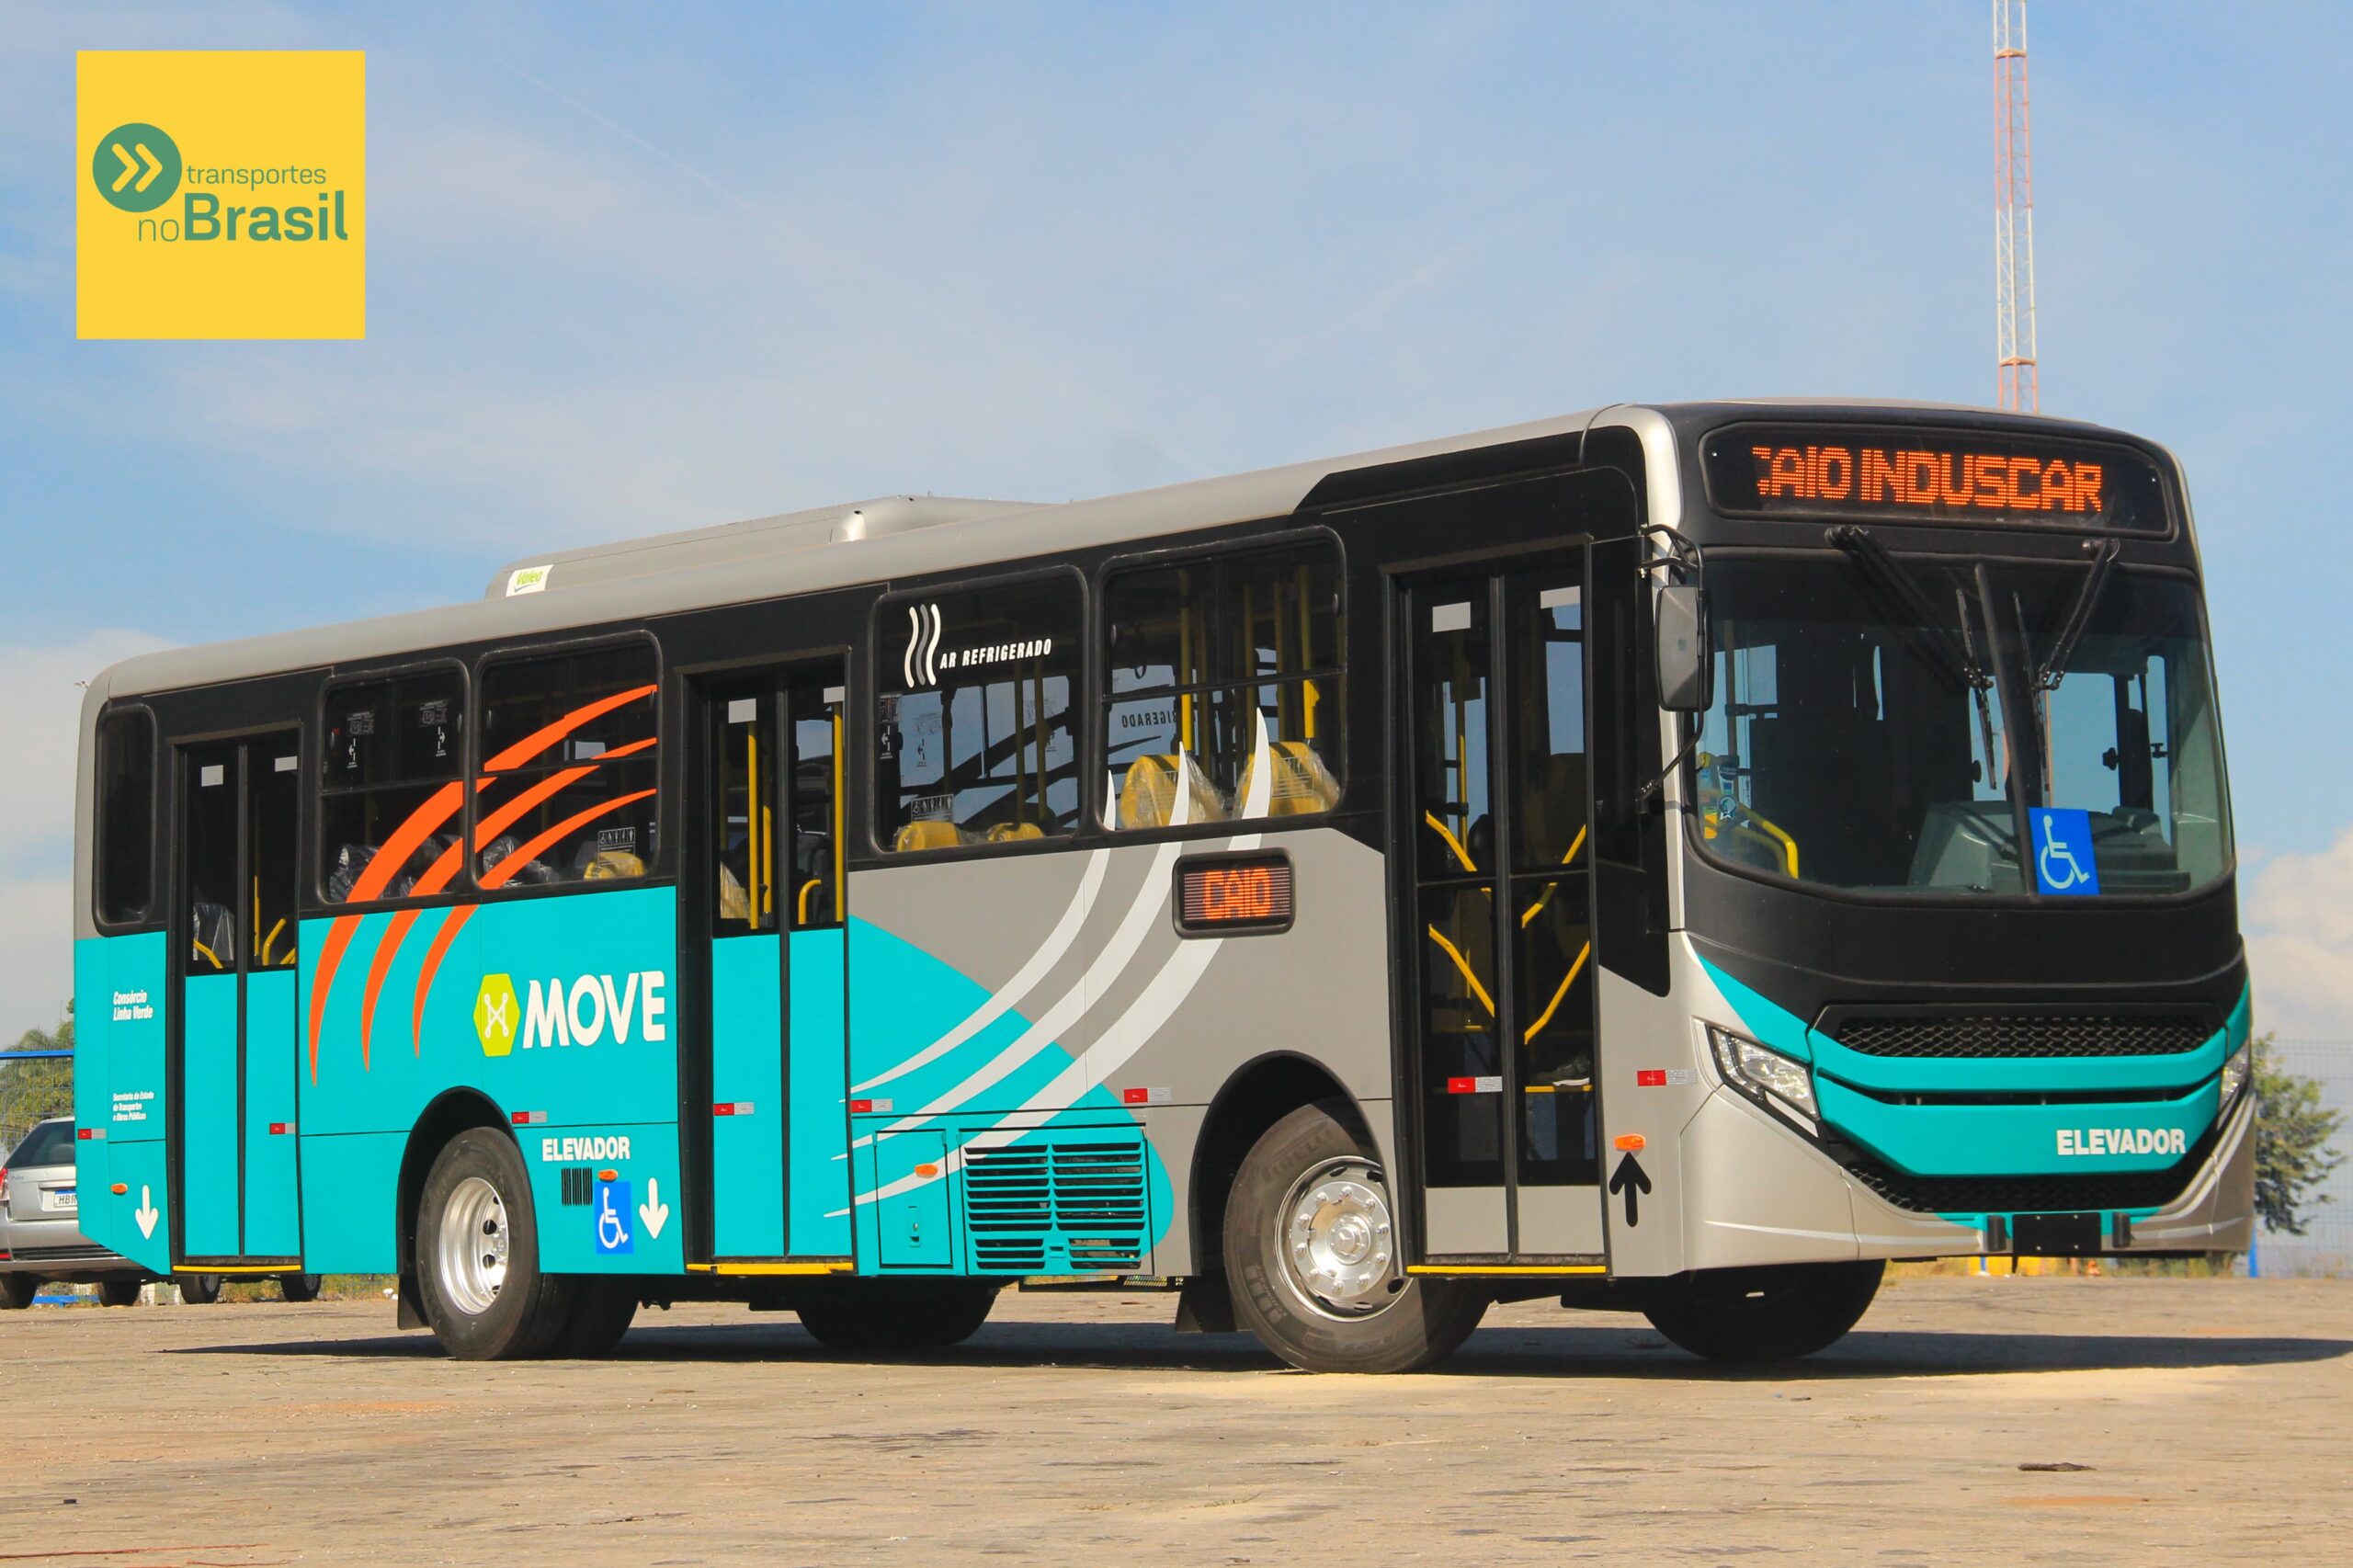 Turilessa inova no transporte urbano mineiro com novos ônibus Apache Vip V para o sistema Move Metropolitano